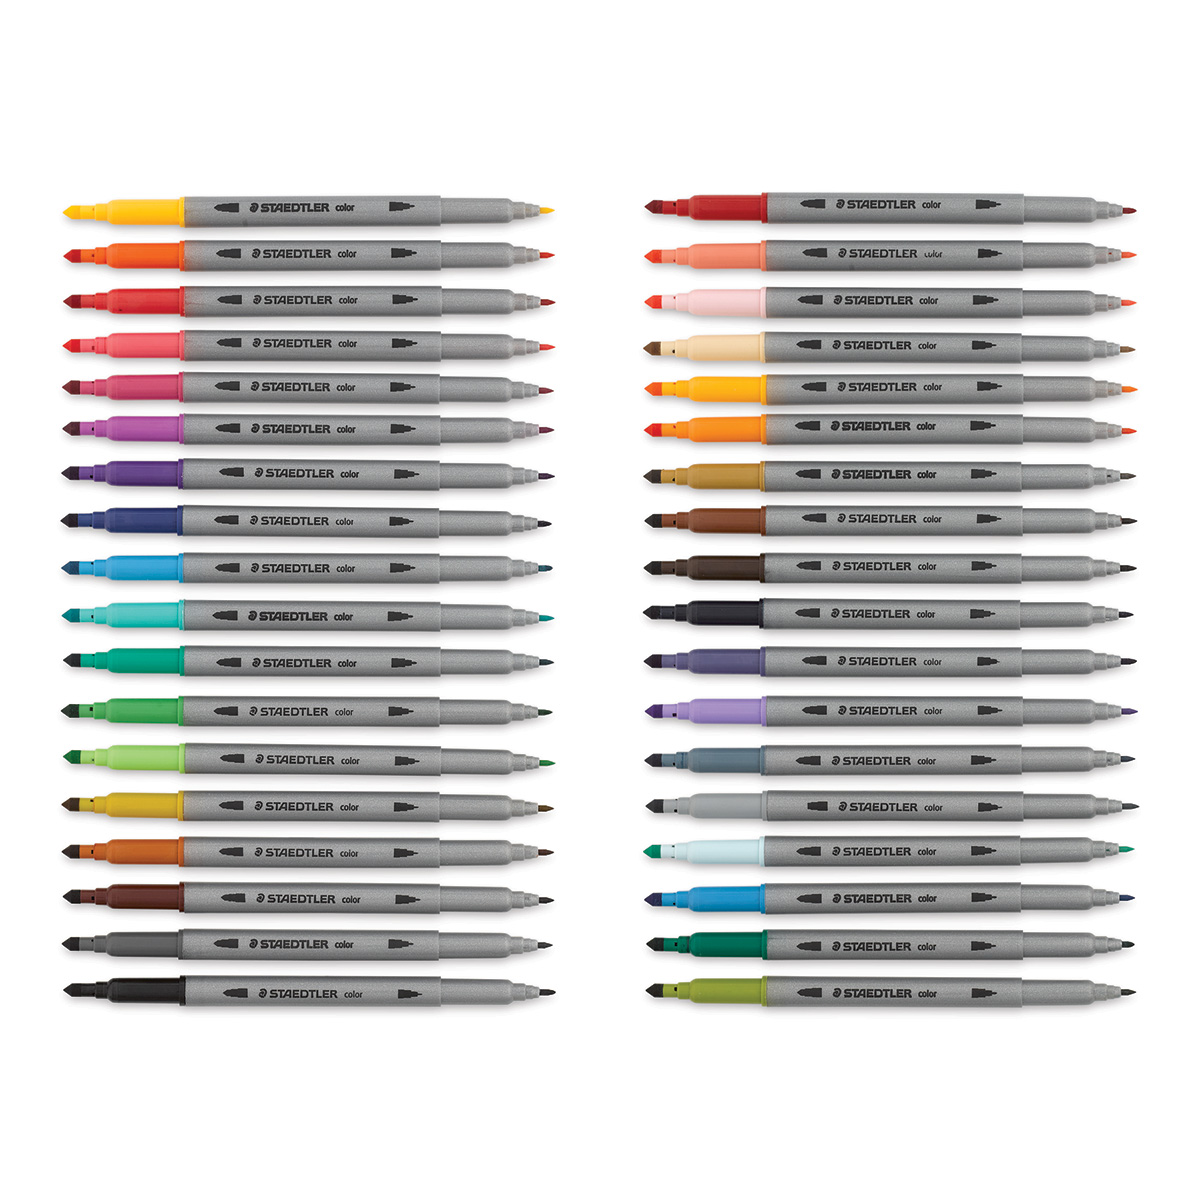 Staedtler Double-Ended Fibre Tip Pens, 36 Pack